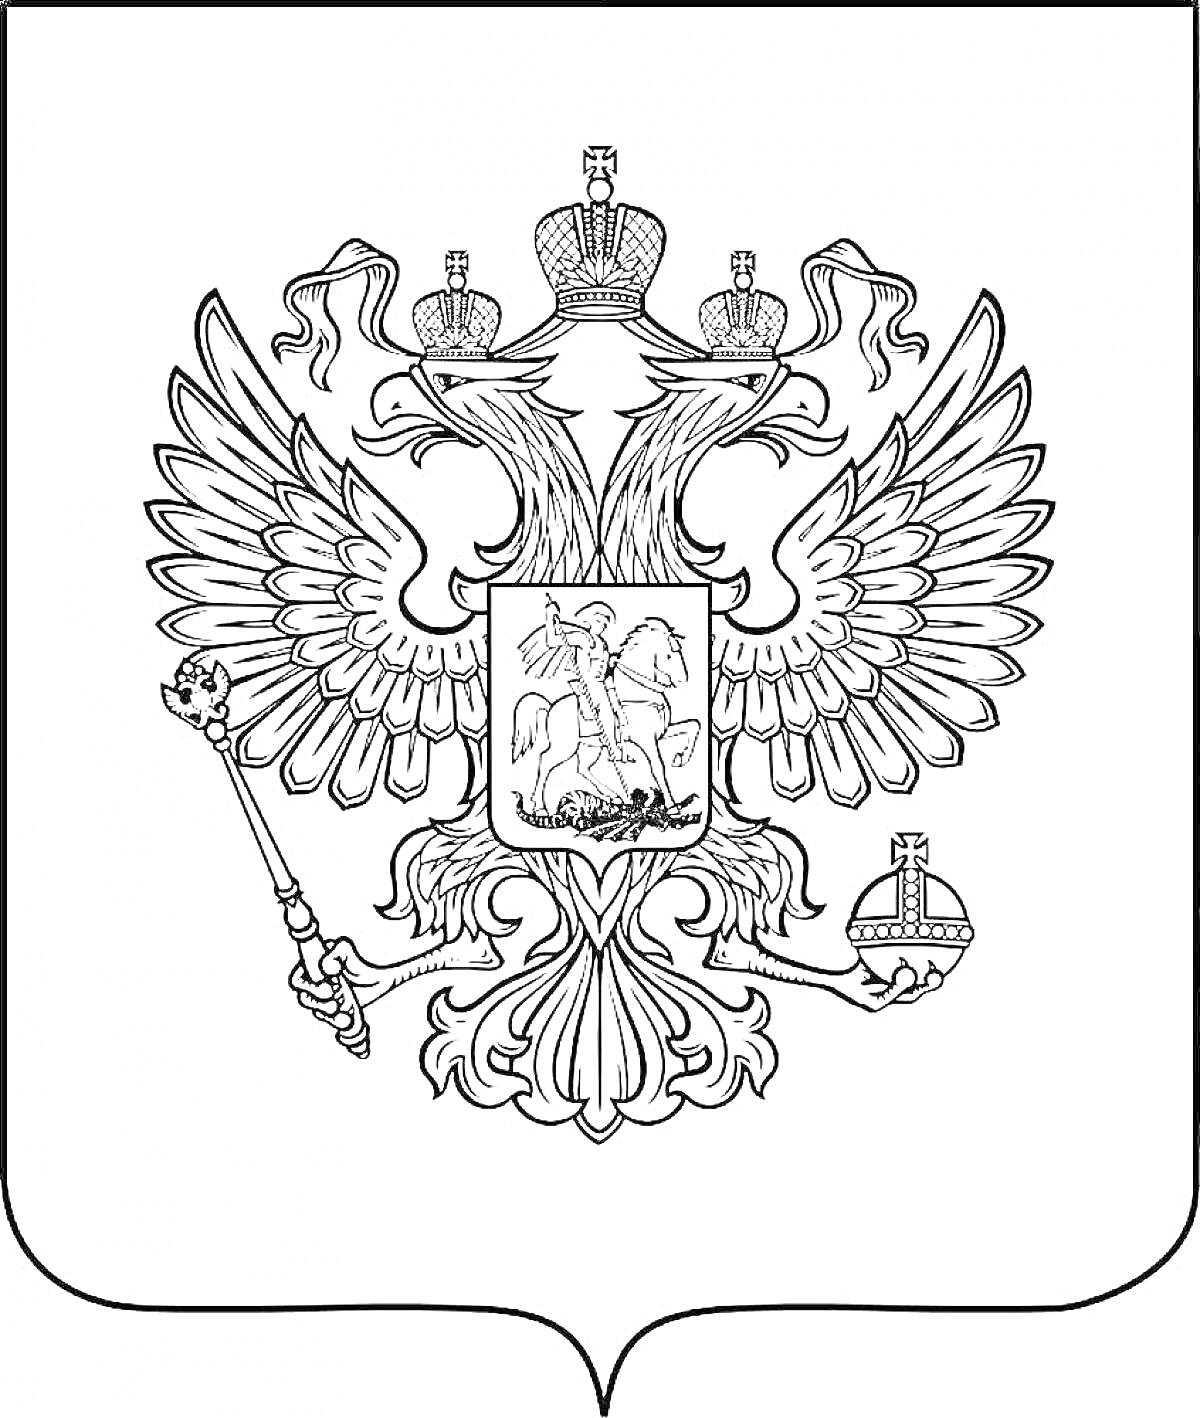 Герб Российской Федерации с двуглавым орлом, державой и скипетром, щитом с изображением Георгия Победоносца